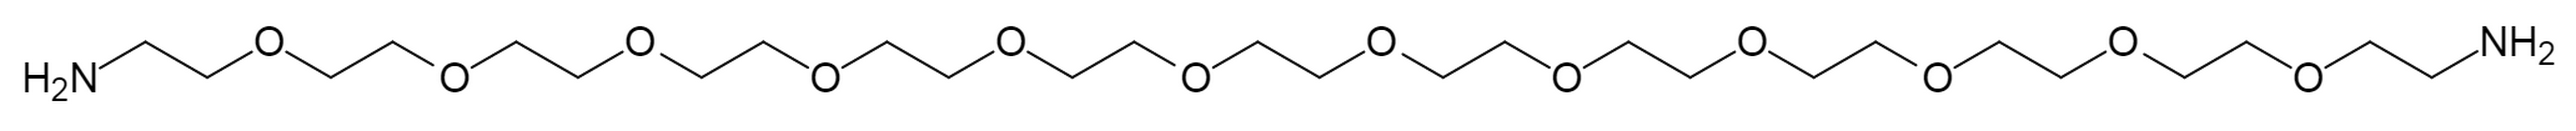 Amino-PEG12-amine